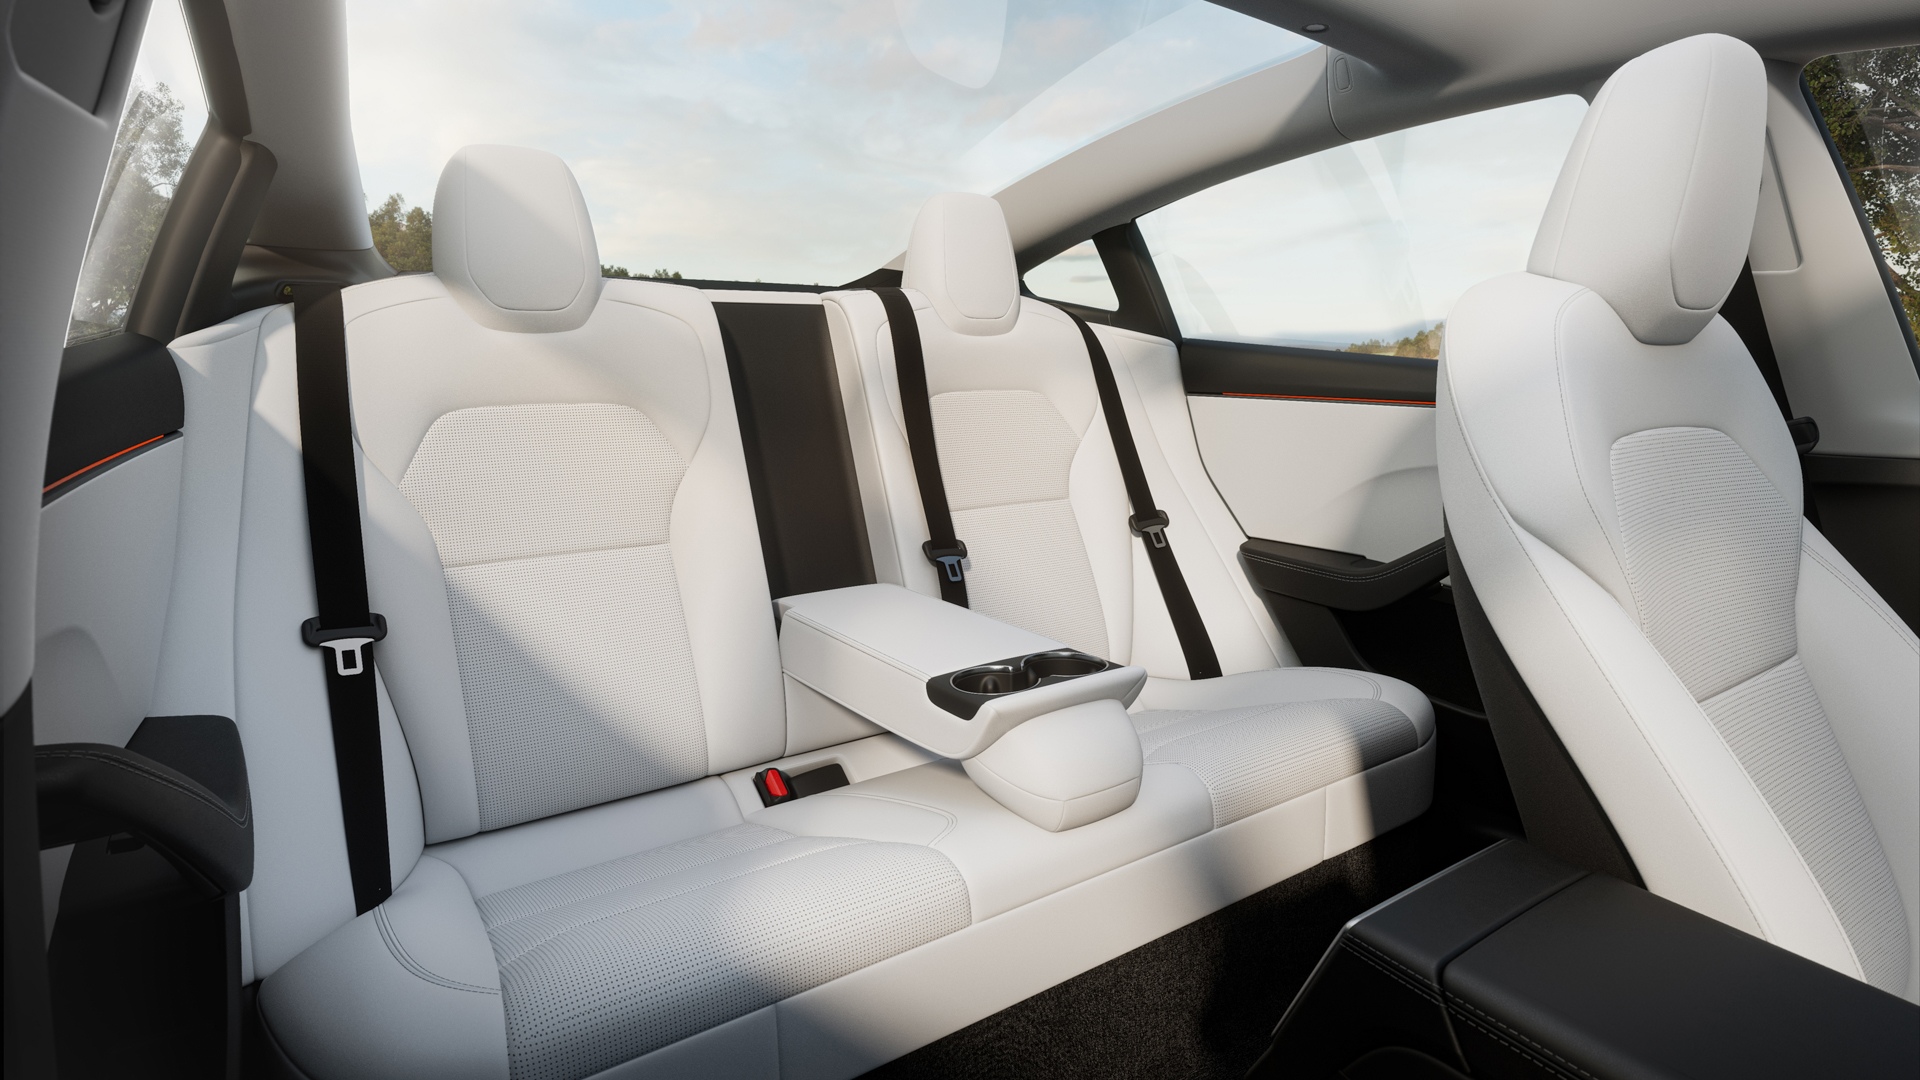 Tesla Model 3 Highland 2024 Facelift in Bayern - Forstern